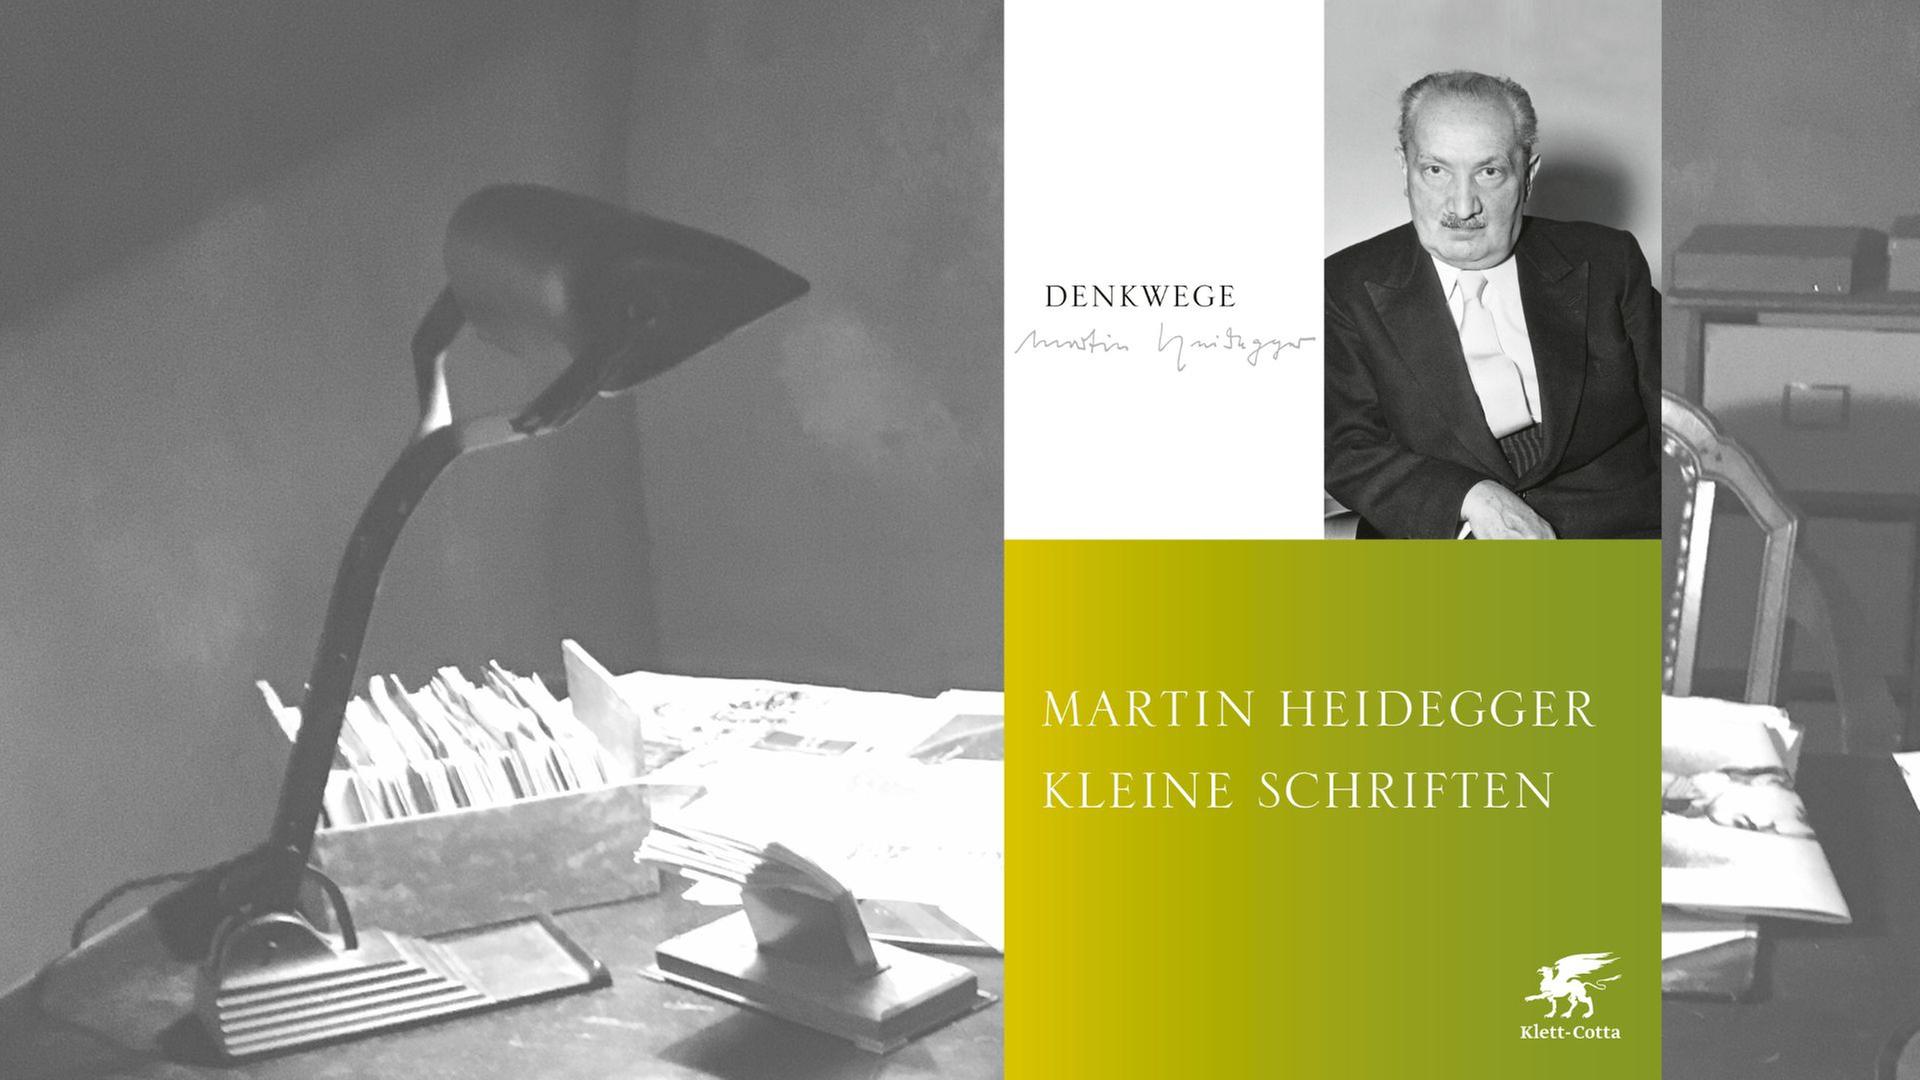 Martin Heidegger: "Kleine Schriften"
Zu sehen ist das Buchcover auf dem ein Porträt von Heidegger abgebildet ist.
Im Hintergrund ein Schreibtisch